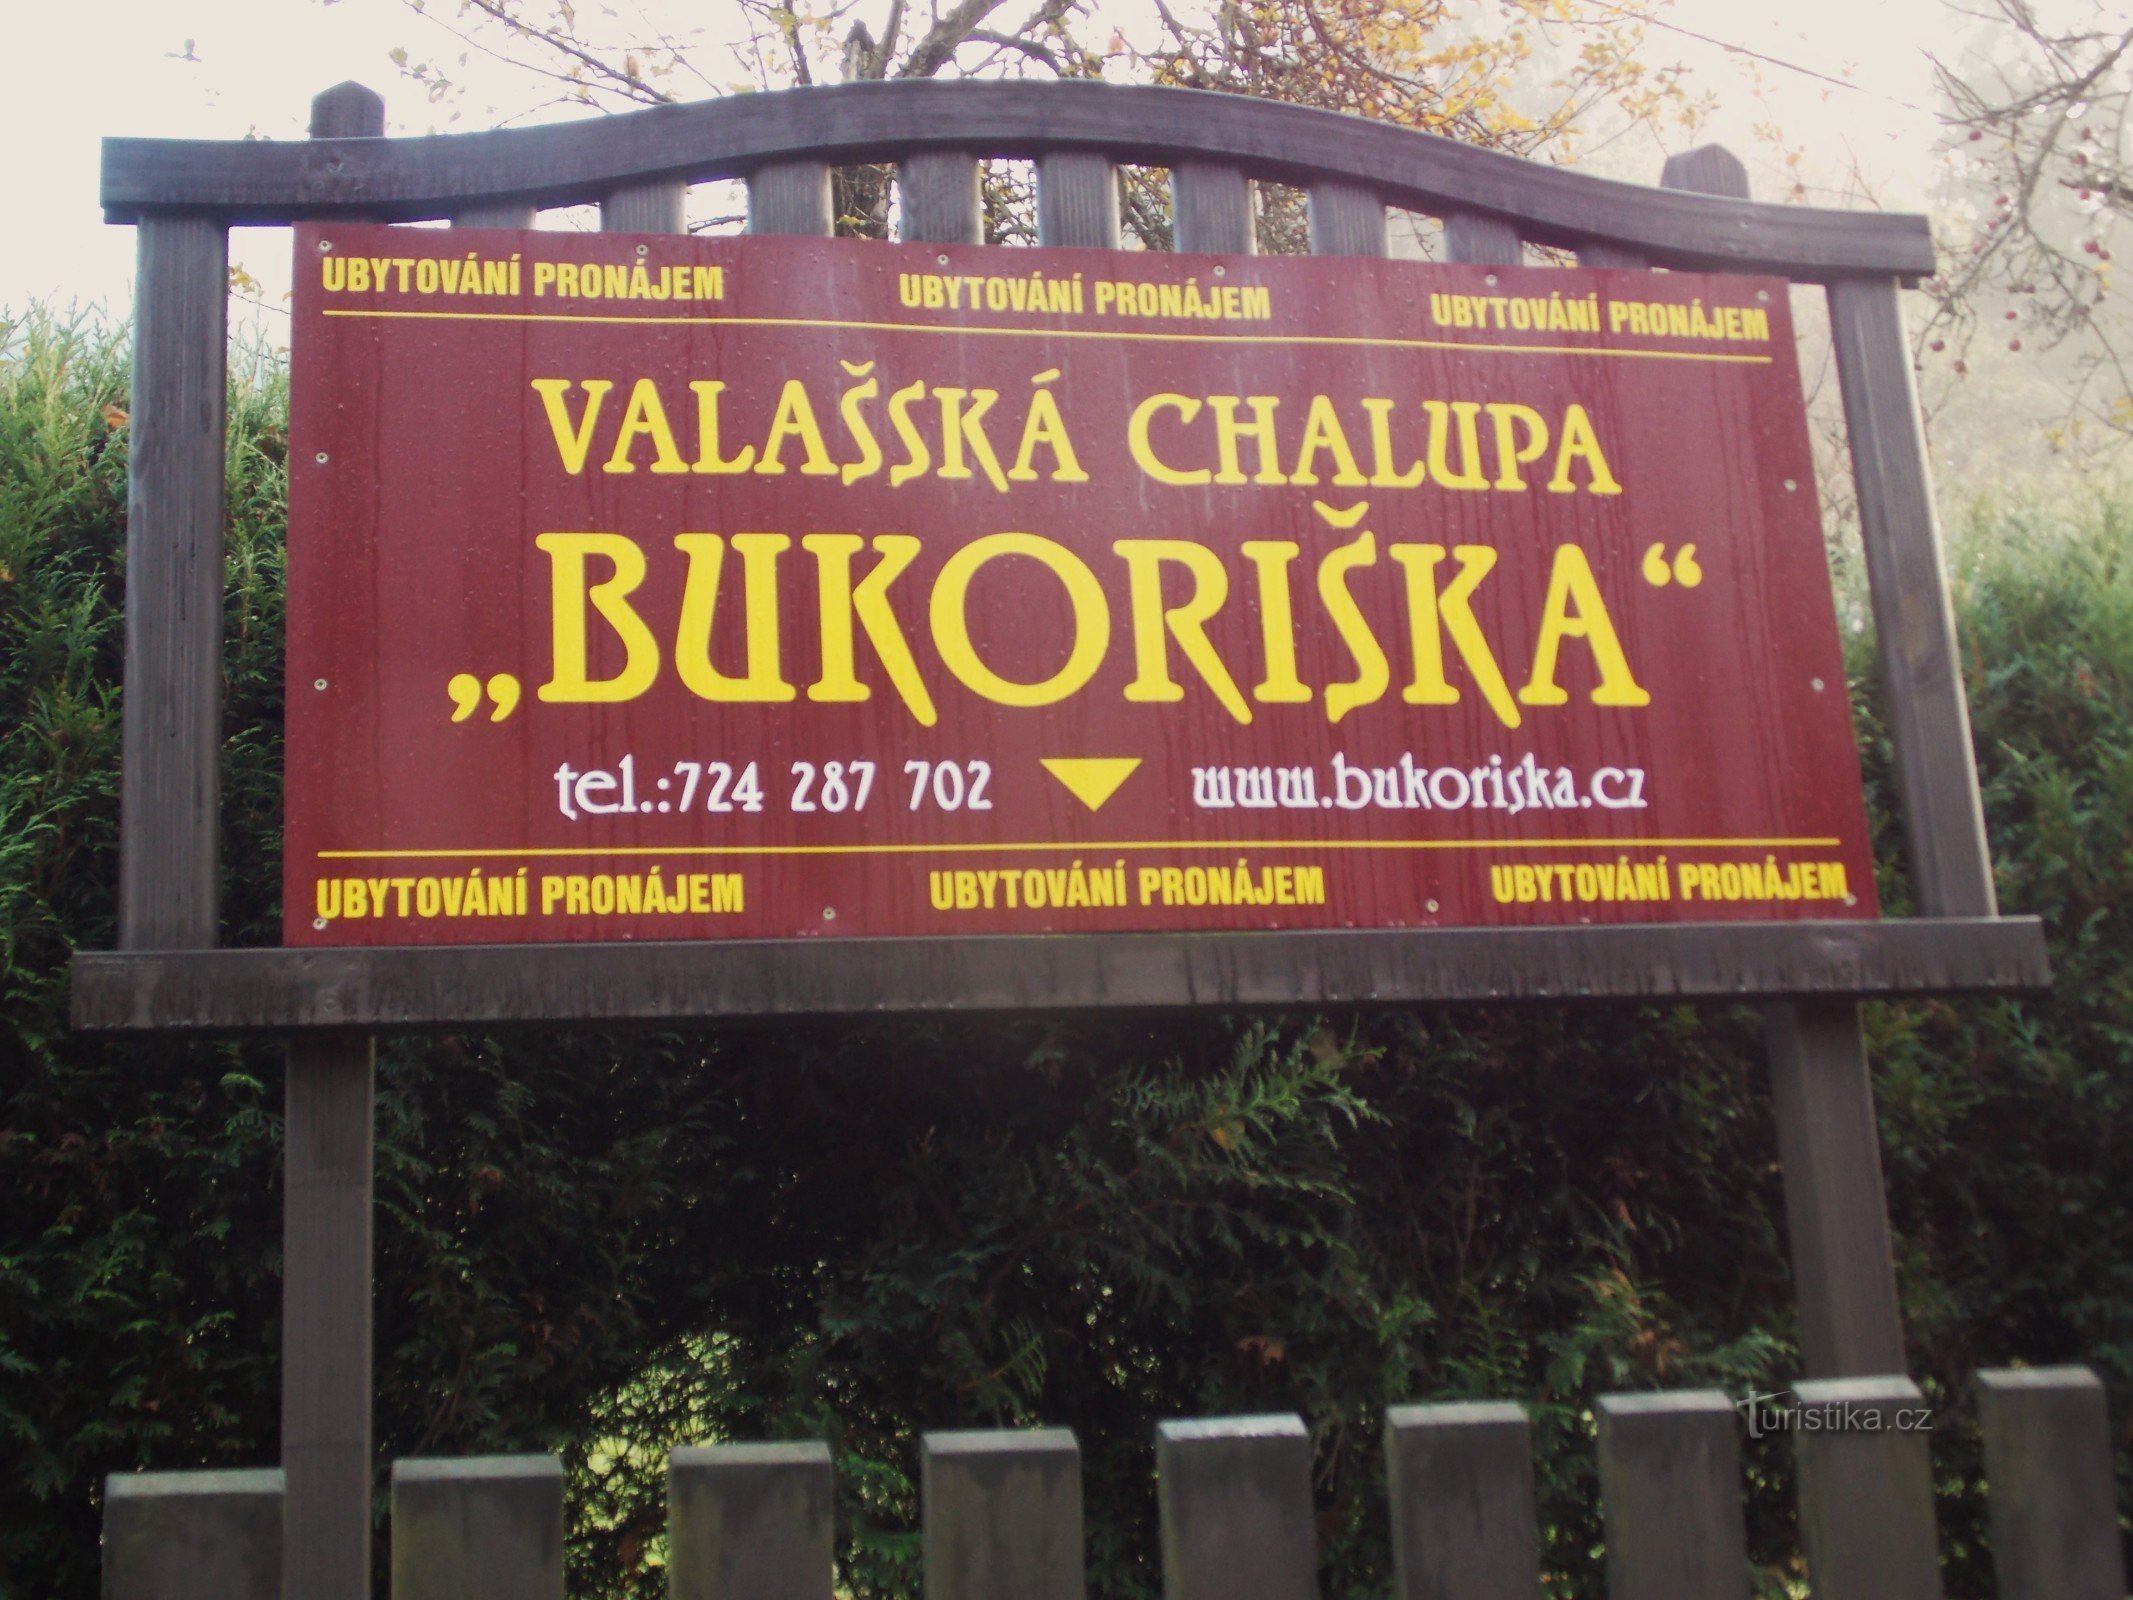 瓦拉几亚小屋 - Bukoriška - Velké Karlovice 的住宿